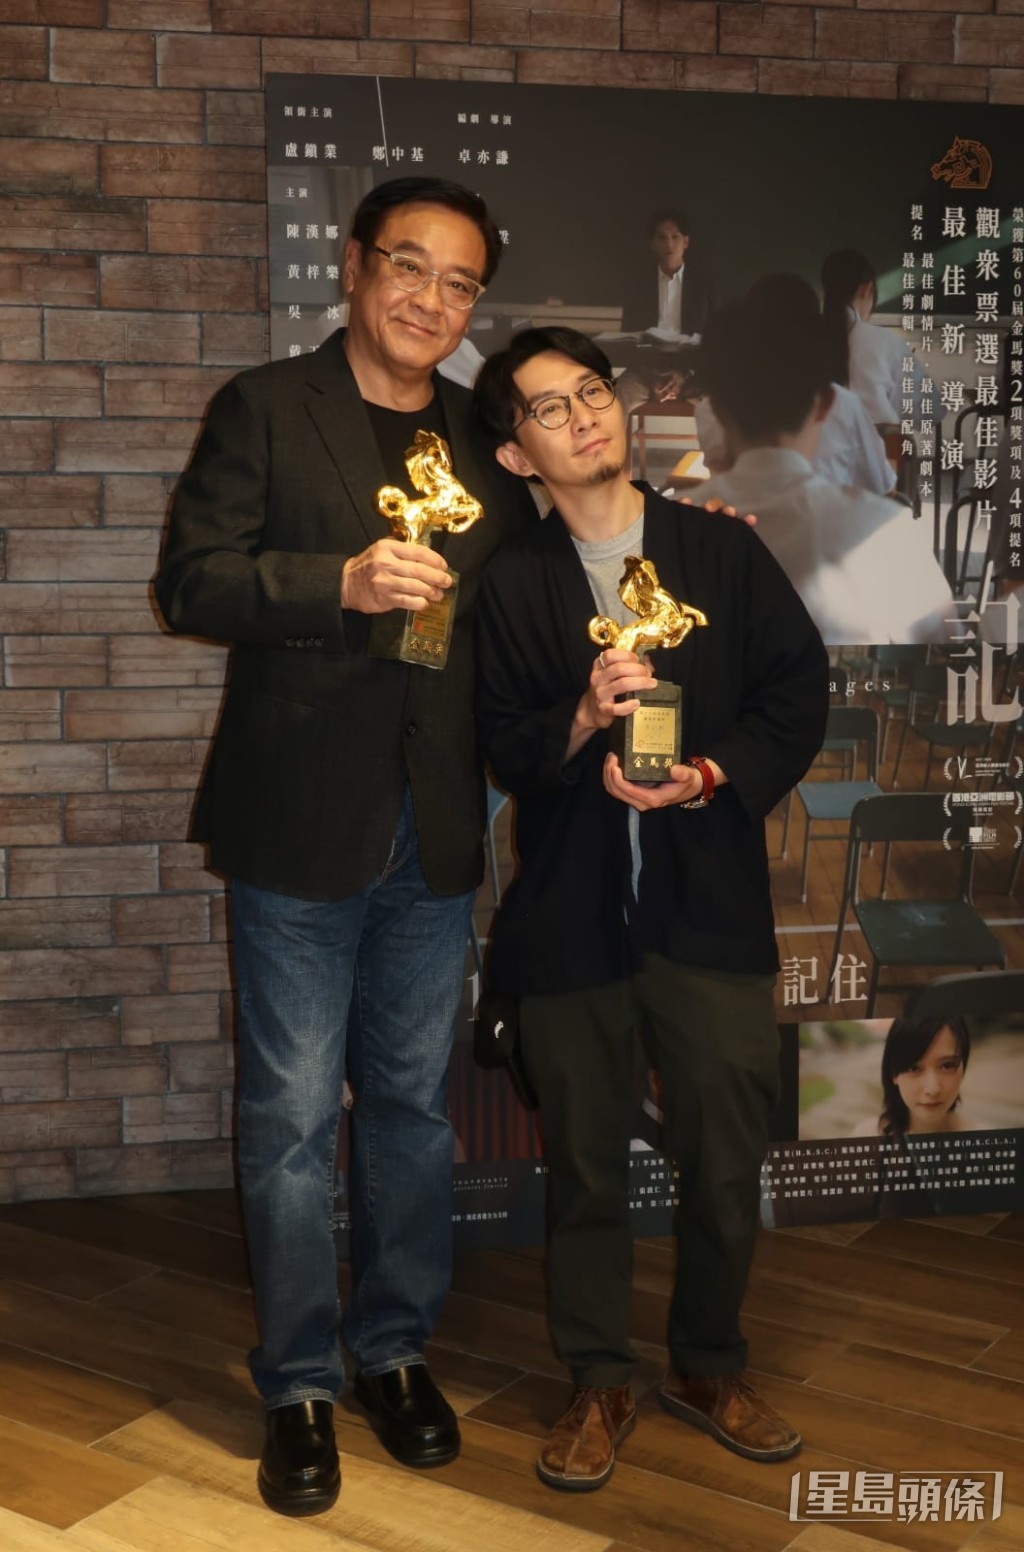 卓亦谦早前已夺得“第60届金马奖”、“第17届亚洲电影大奖”及“2023年度香港电影导演会年度大奖”的导演奖项。